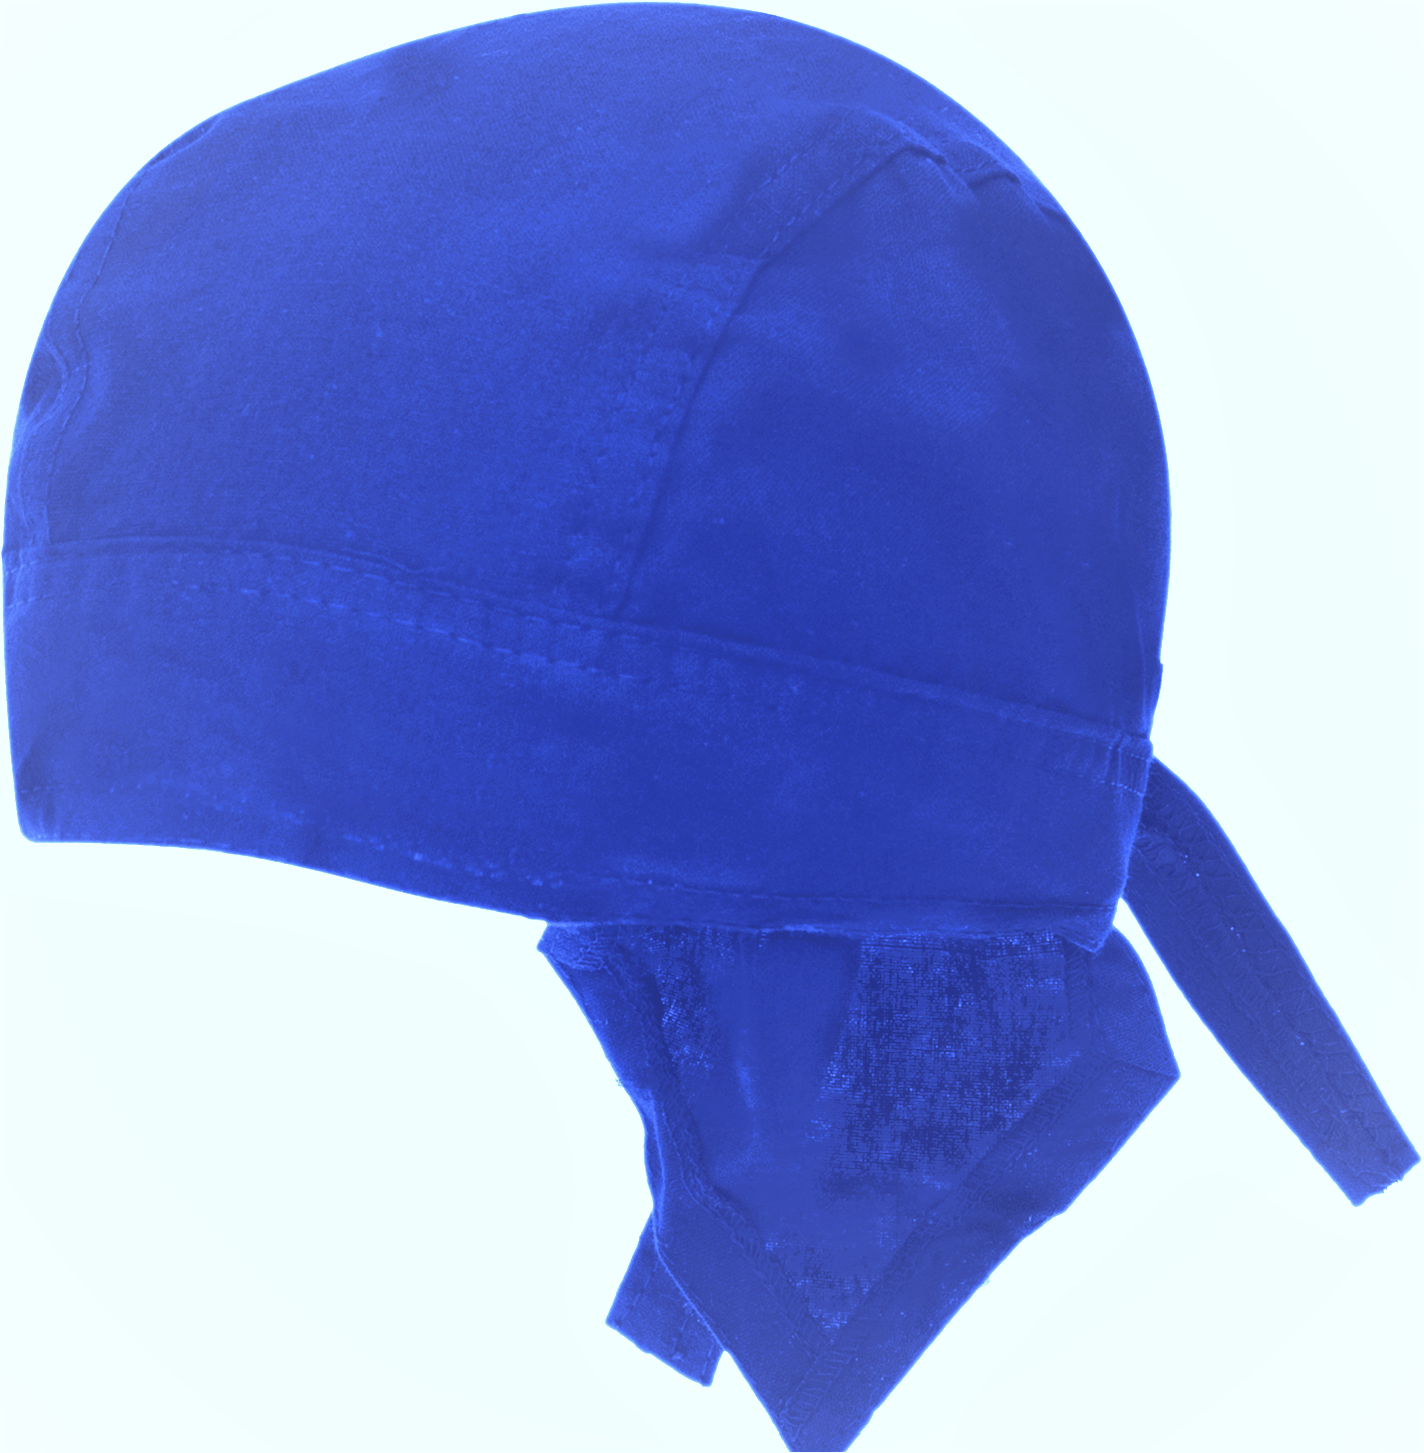 600pcs Mirage Blue Solid Color Head Wrap - 100% Cotton - Imported - Mirage Blue, 600pcs/Case